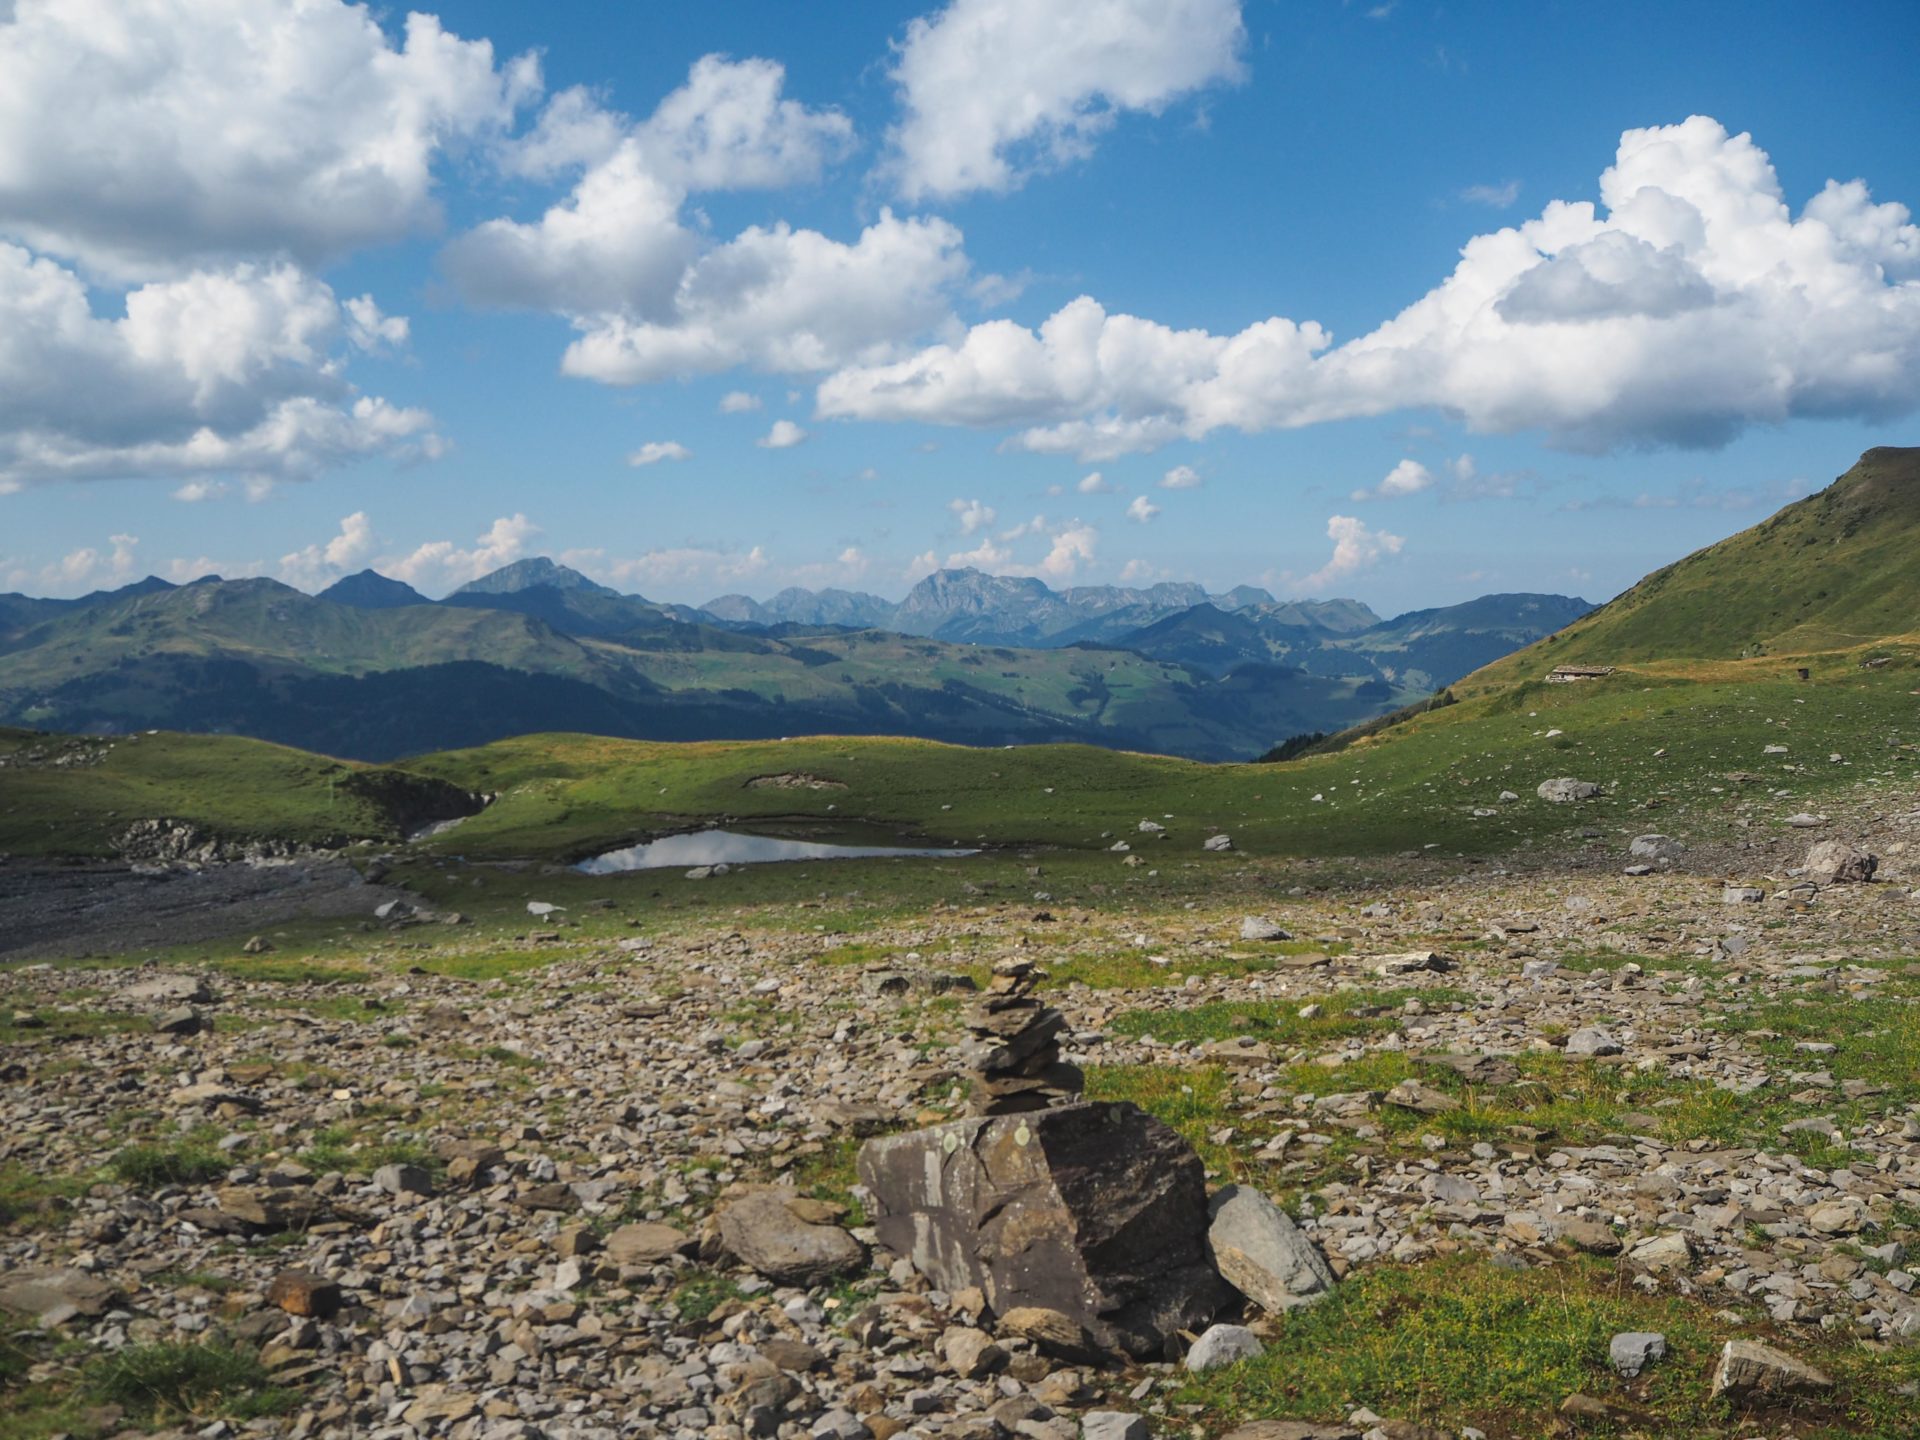 Le lac d'Anthème - Faire le Tour des Dents du Midi en 6 jours en solo et en mode slow - Une randonnée itinérante, un trek à découvrir en Suisse dans le Valais